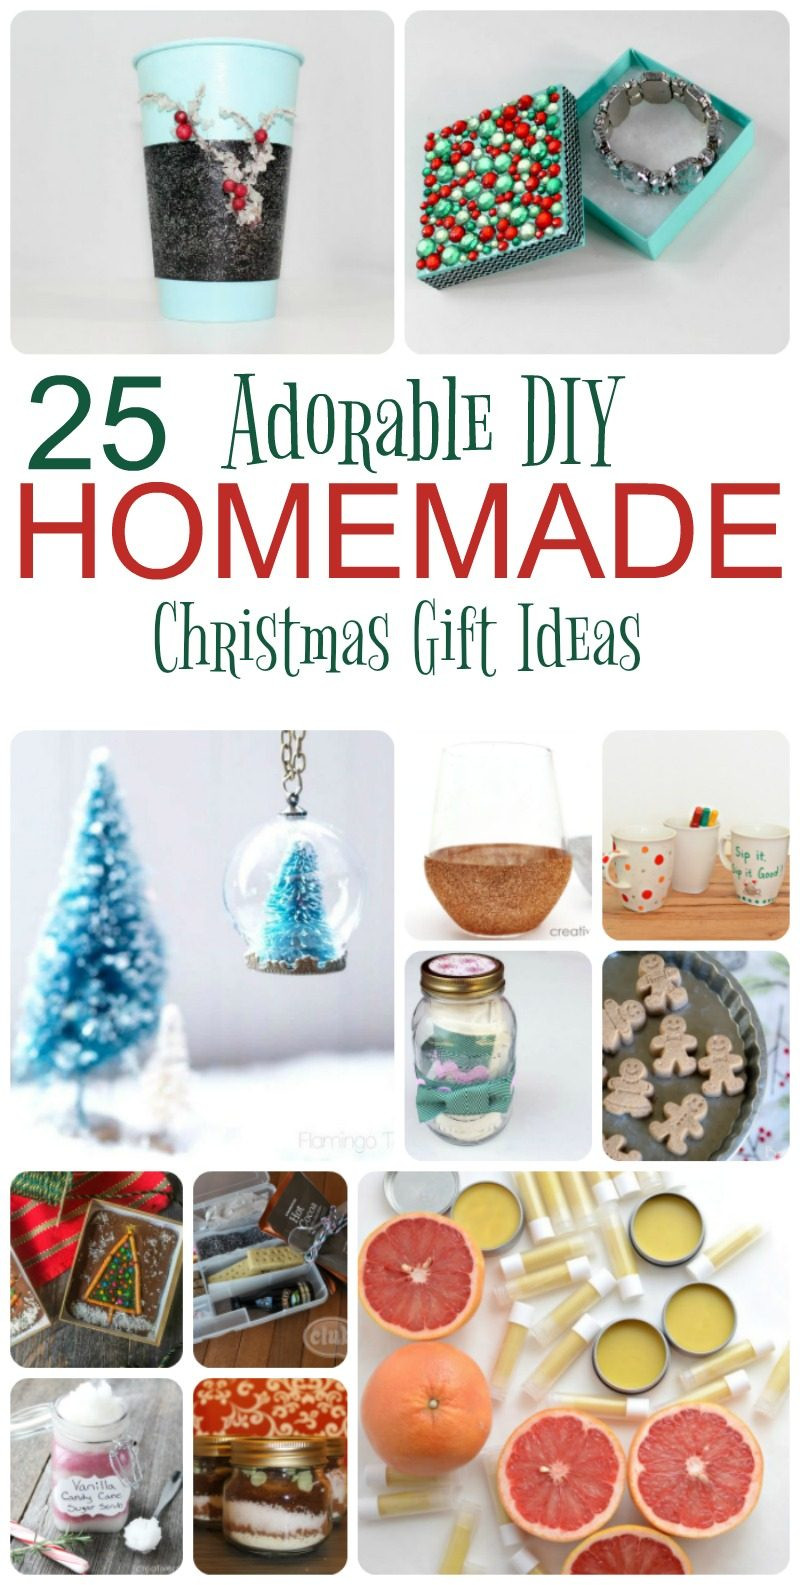 Homemade Christmas Gifts For Kids
 25 Adorable Homemade Gifts to Make for Christmas Pretty